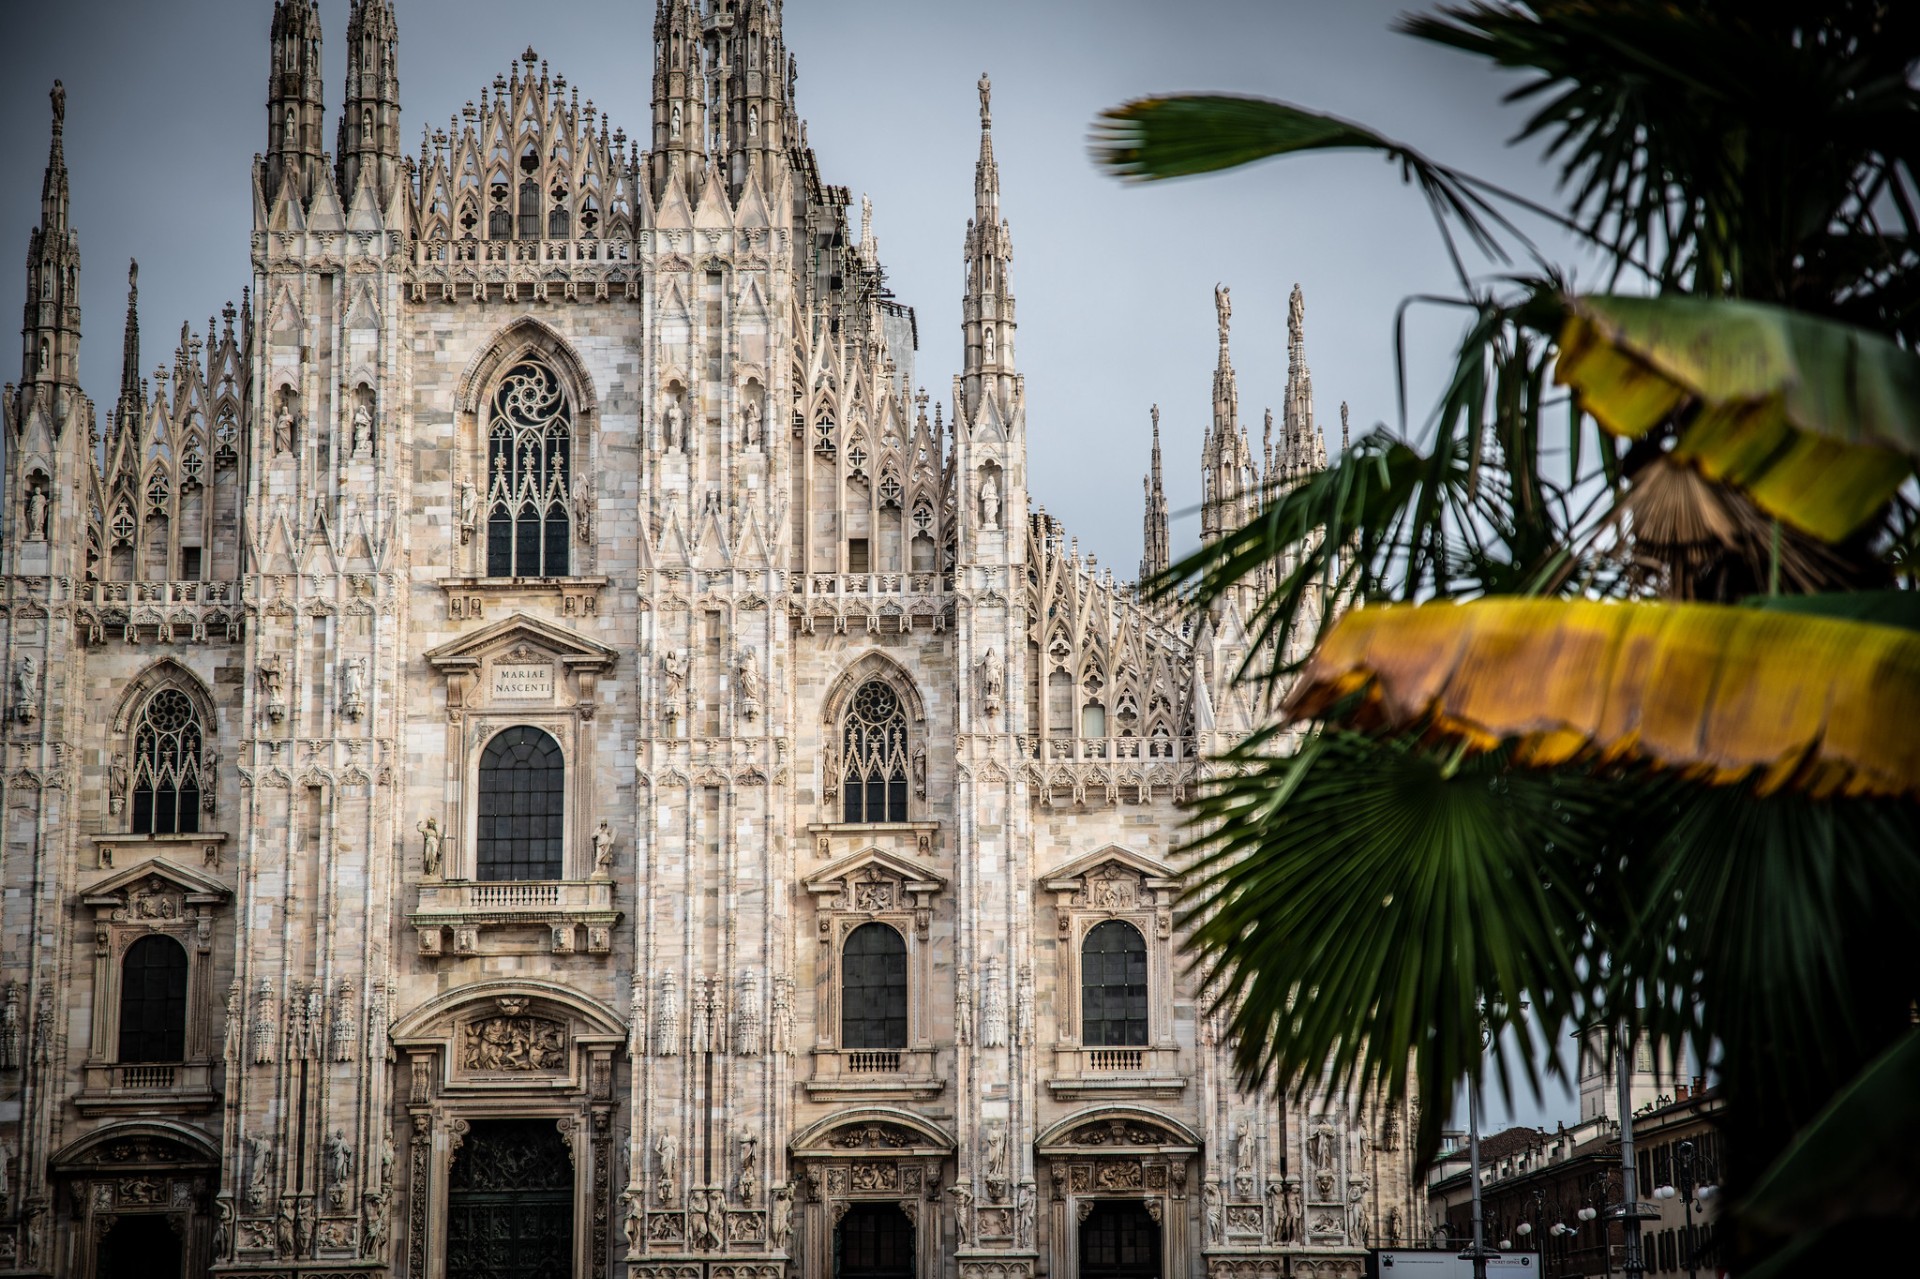 Visit Milan, Italy, Tailor-Made Milan Trips